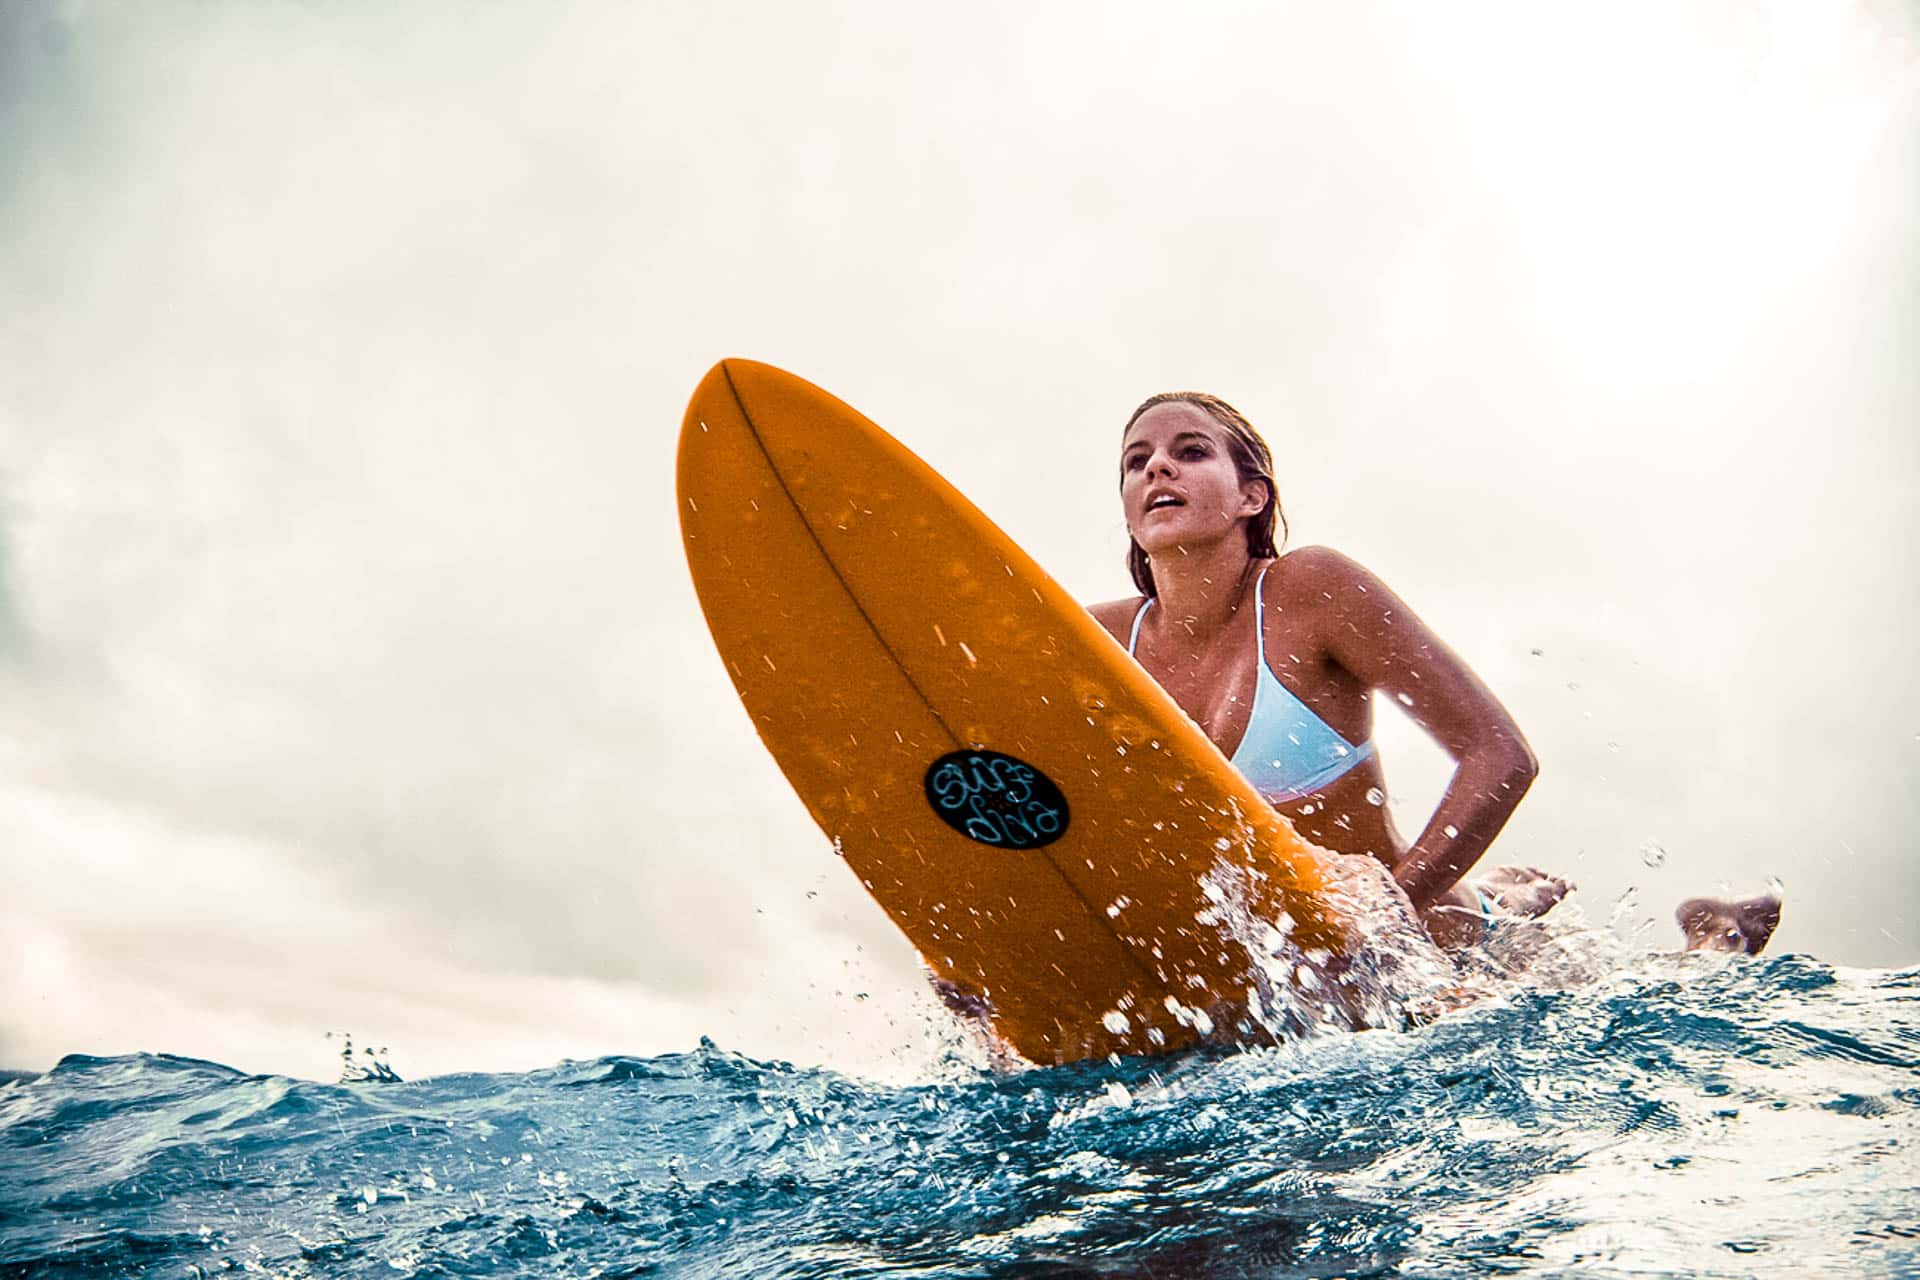 A girl in white bikini on a yellow surfboard in the ocean